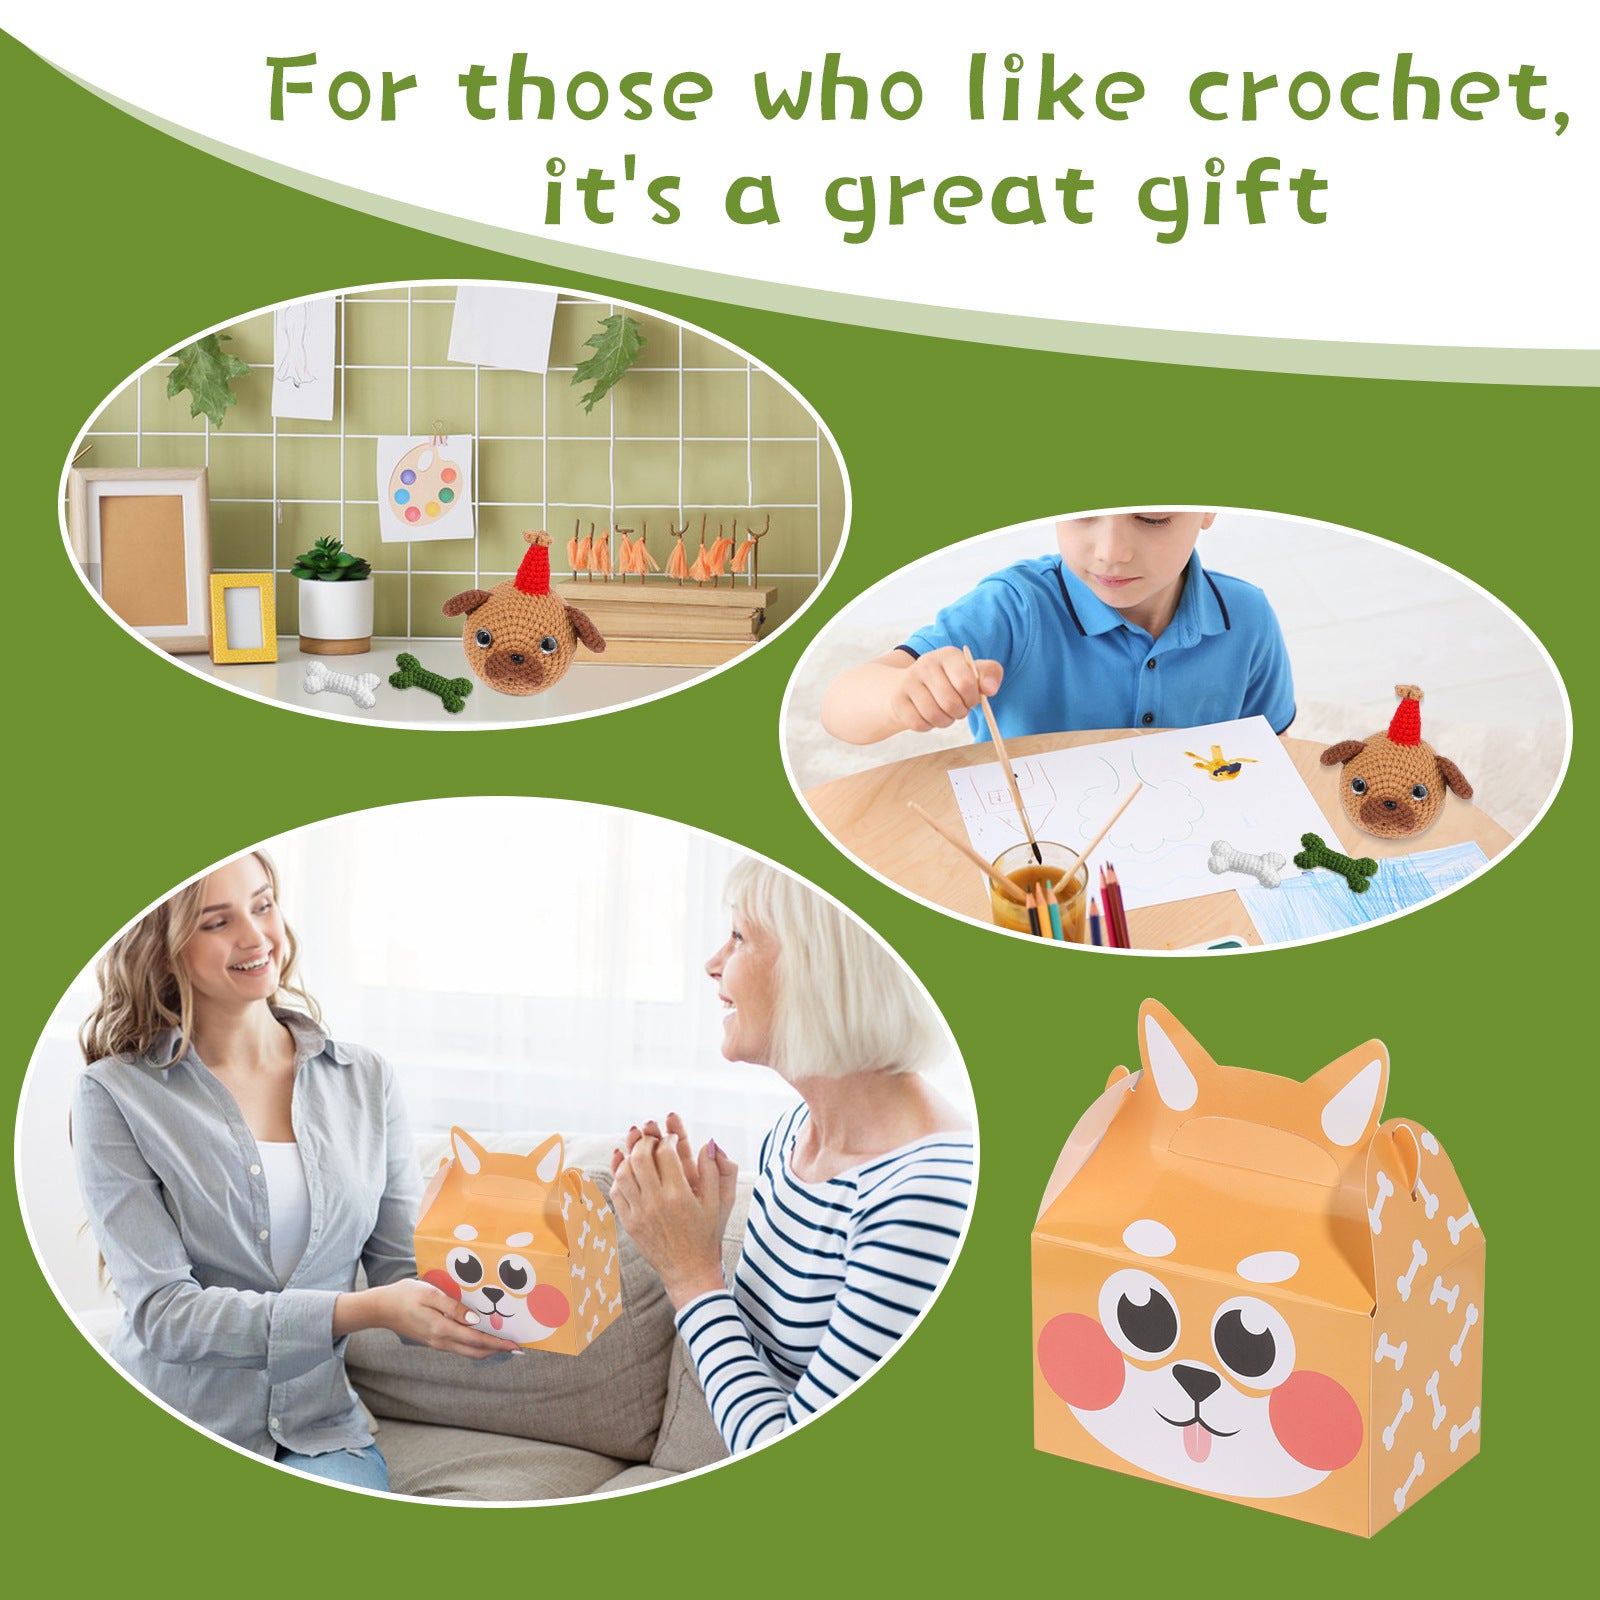 Brown Pug Crochet Kit for Beginners